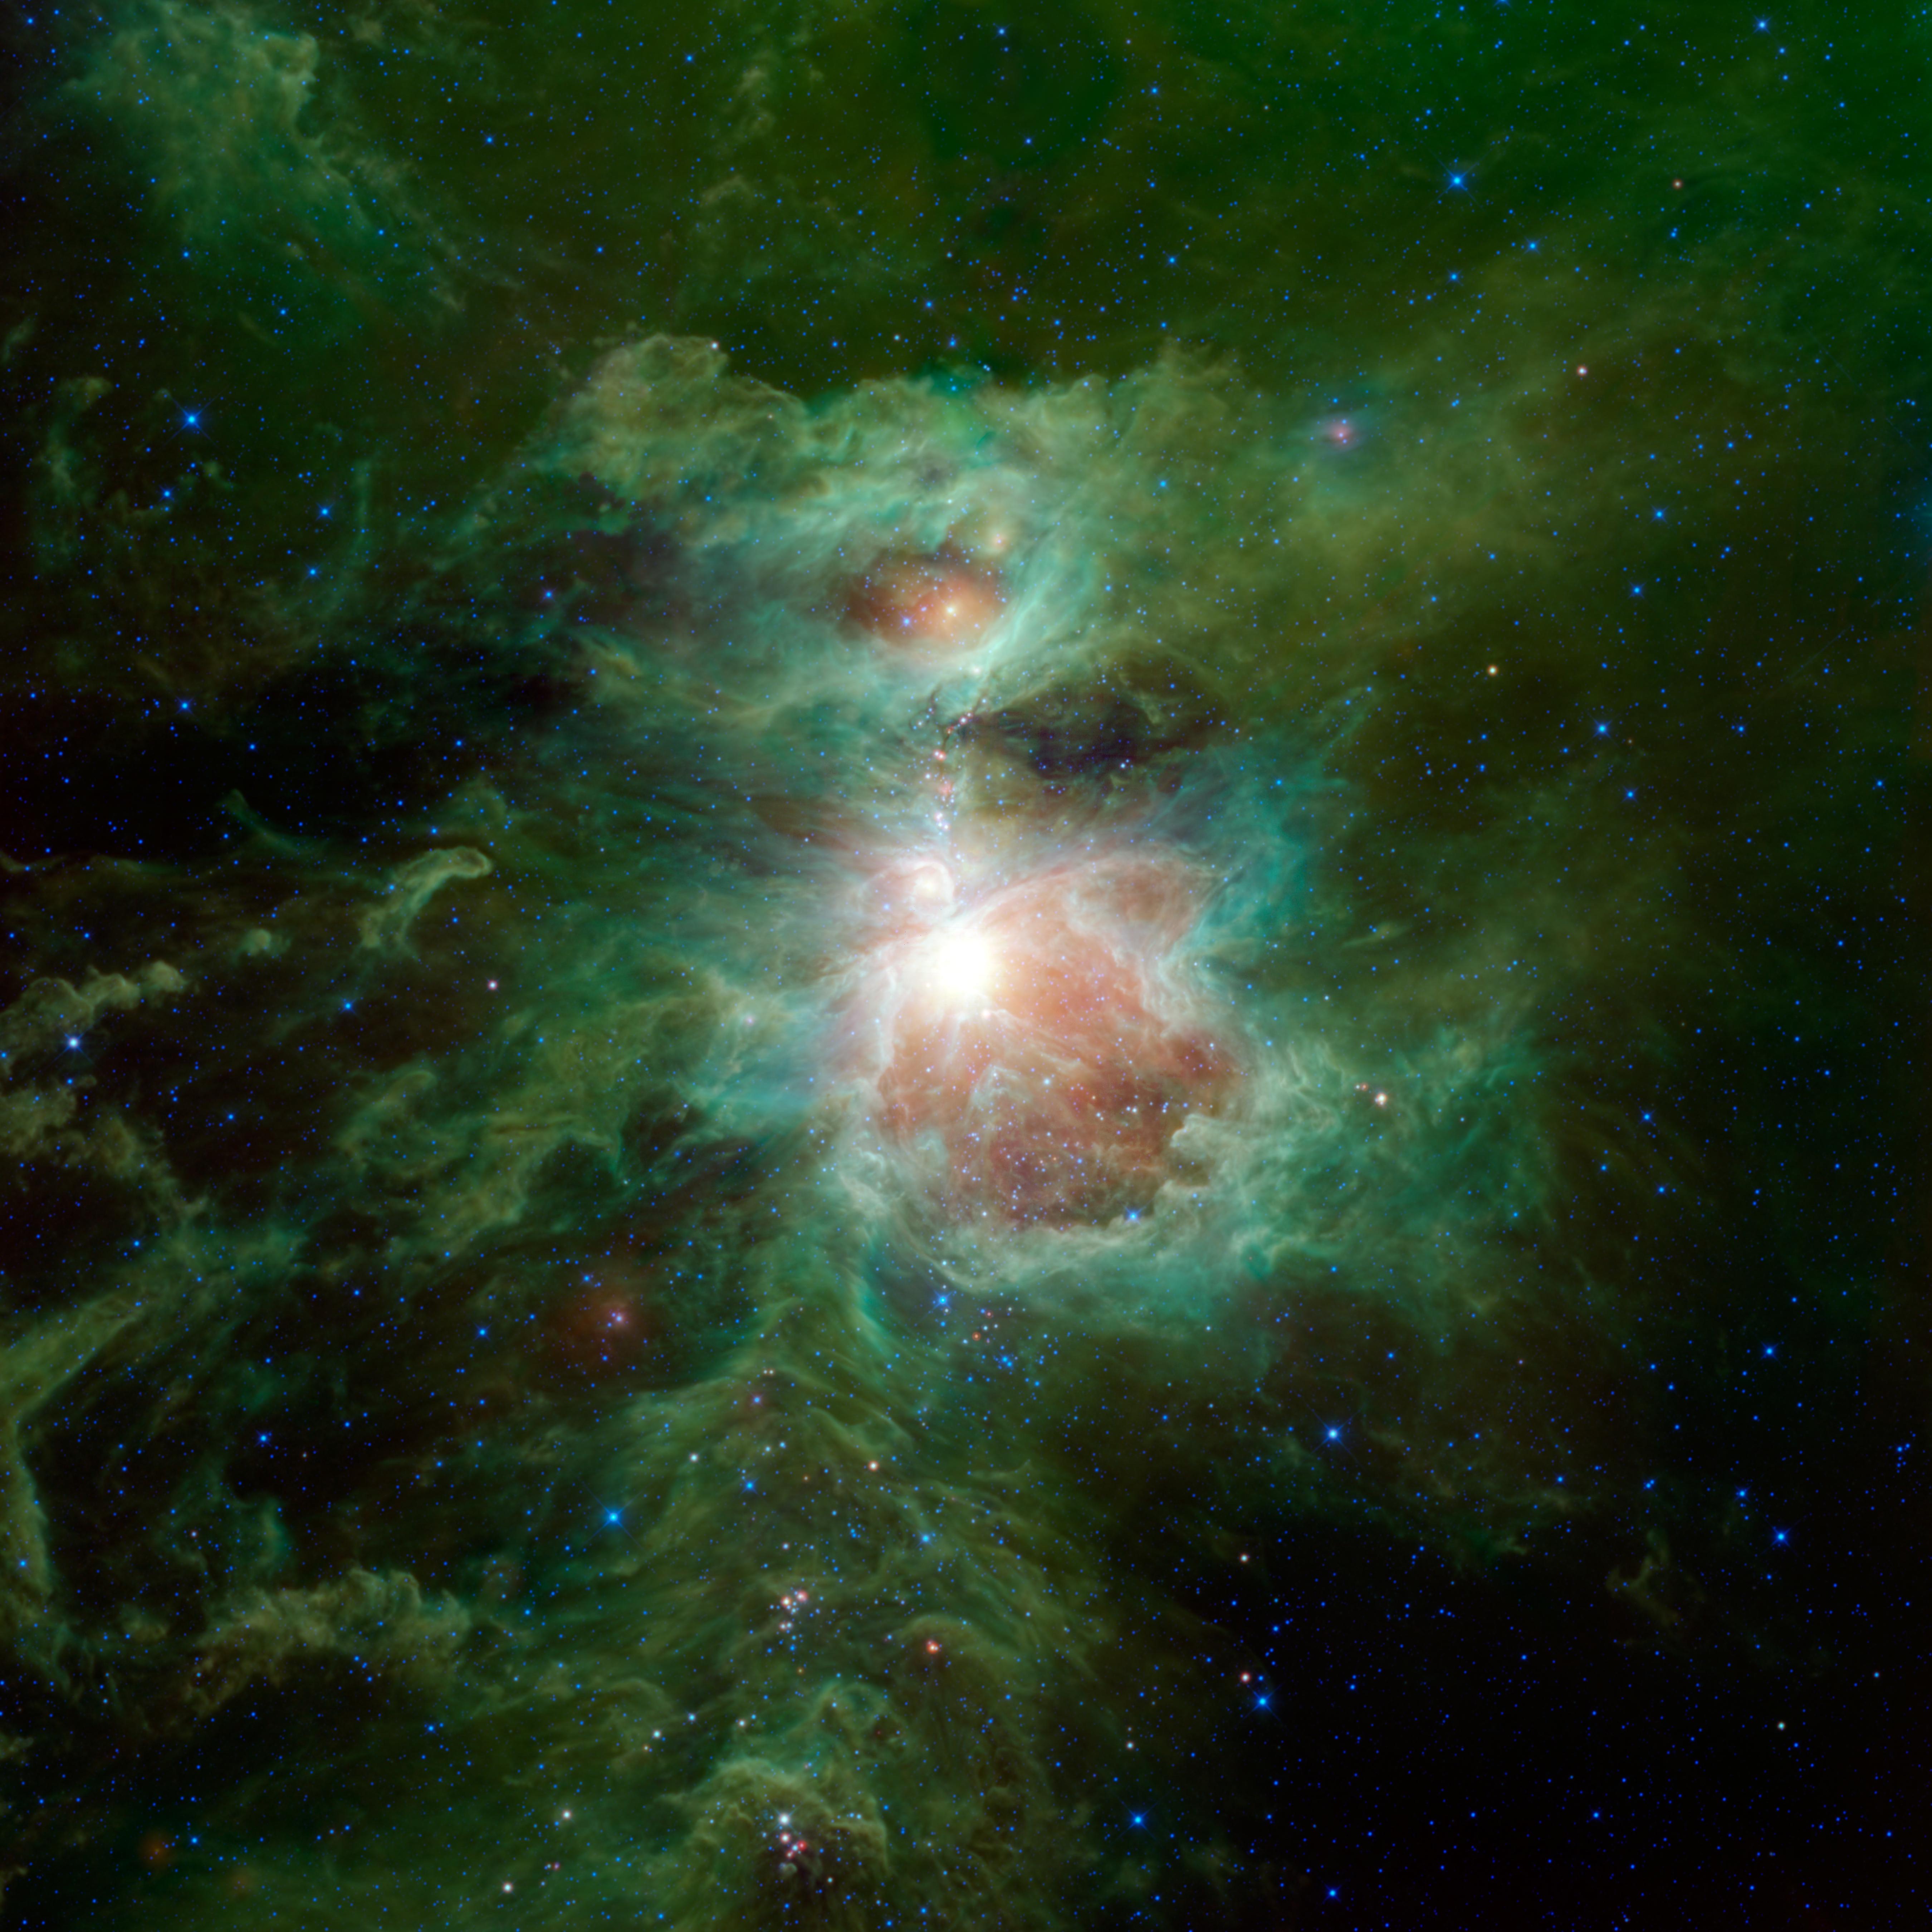 Infrakrasnyi Orion ot sputnika WISE